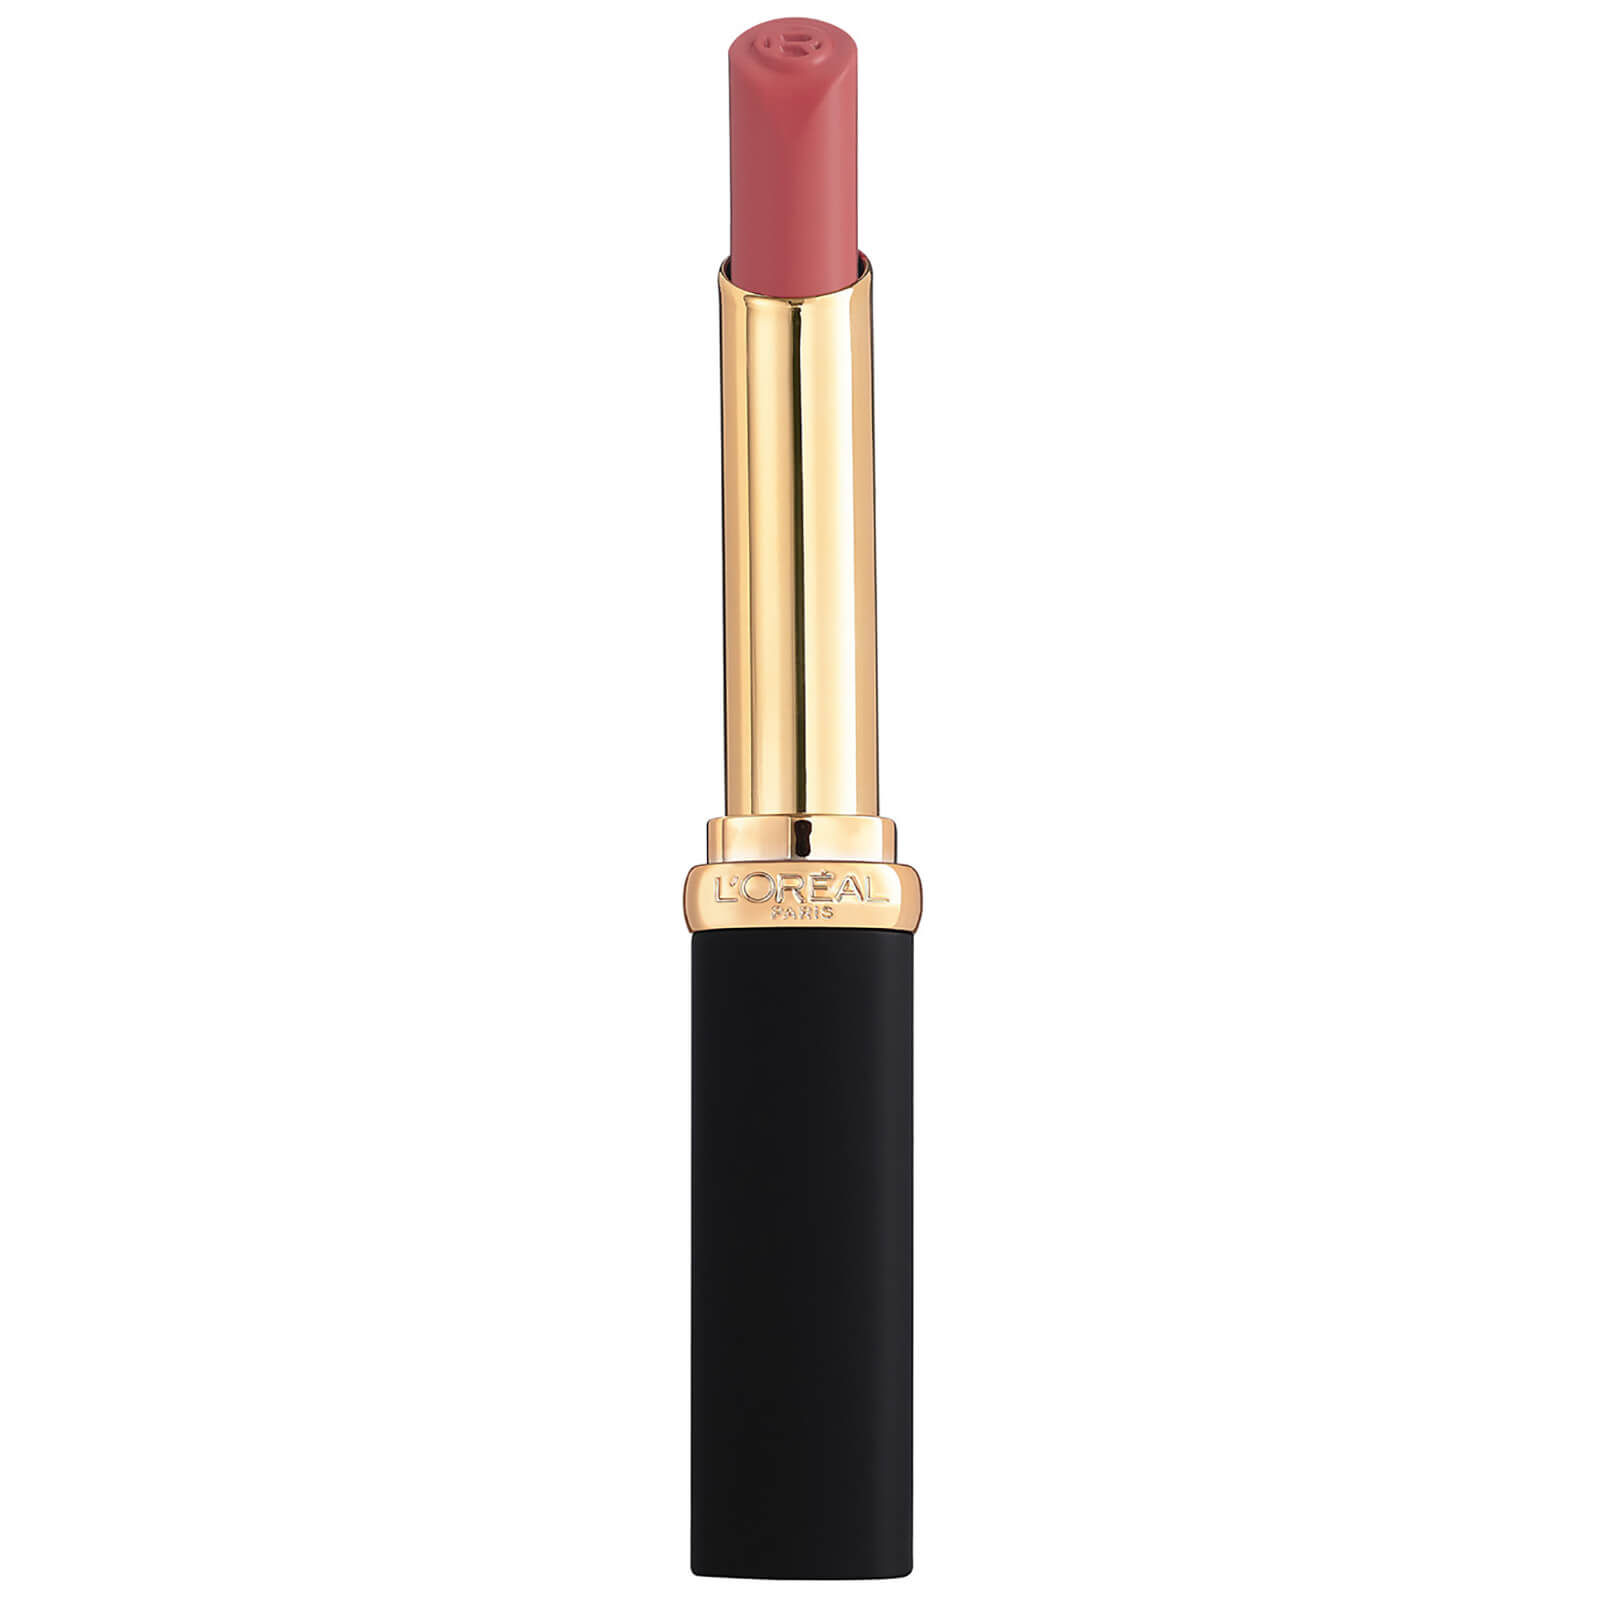 L'Oreal Paris Colour Riche Intense Volume Matte Lipstick 25g (Various Shades) - Rosy Confident